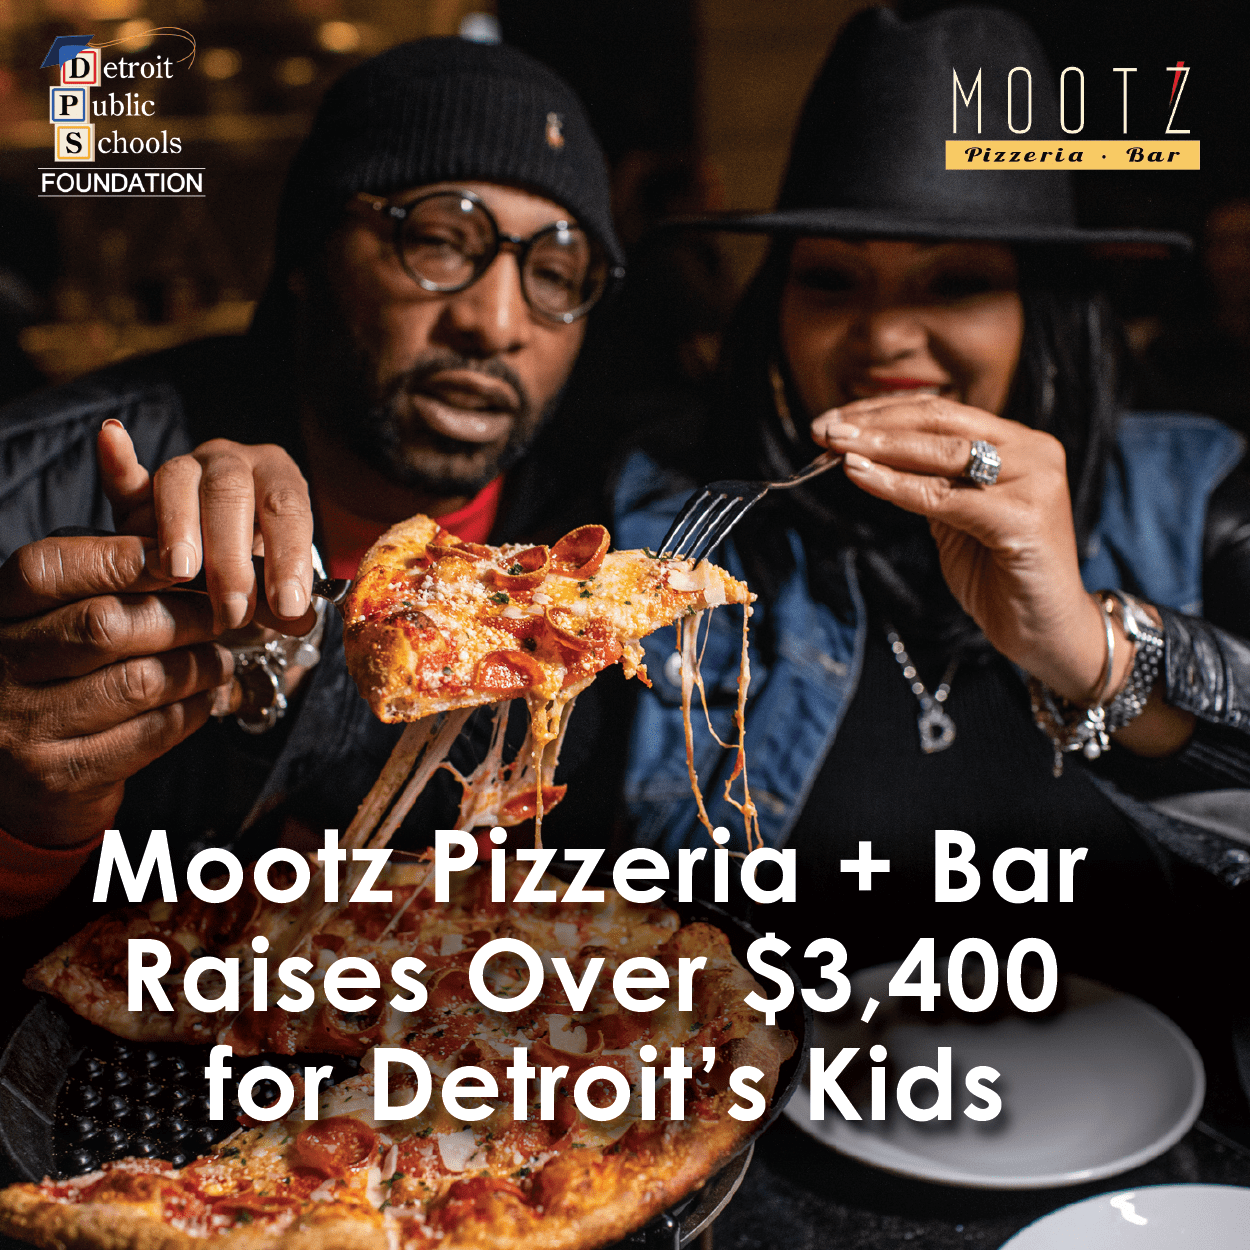 Mootz Pizzeria + Bar Raises Over $3,400 for Detroit’s Kids